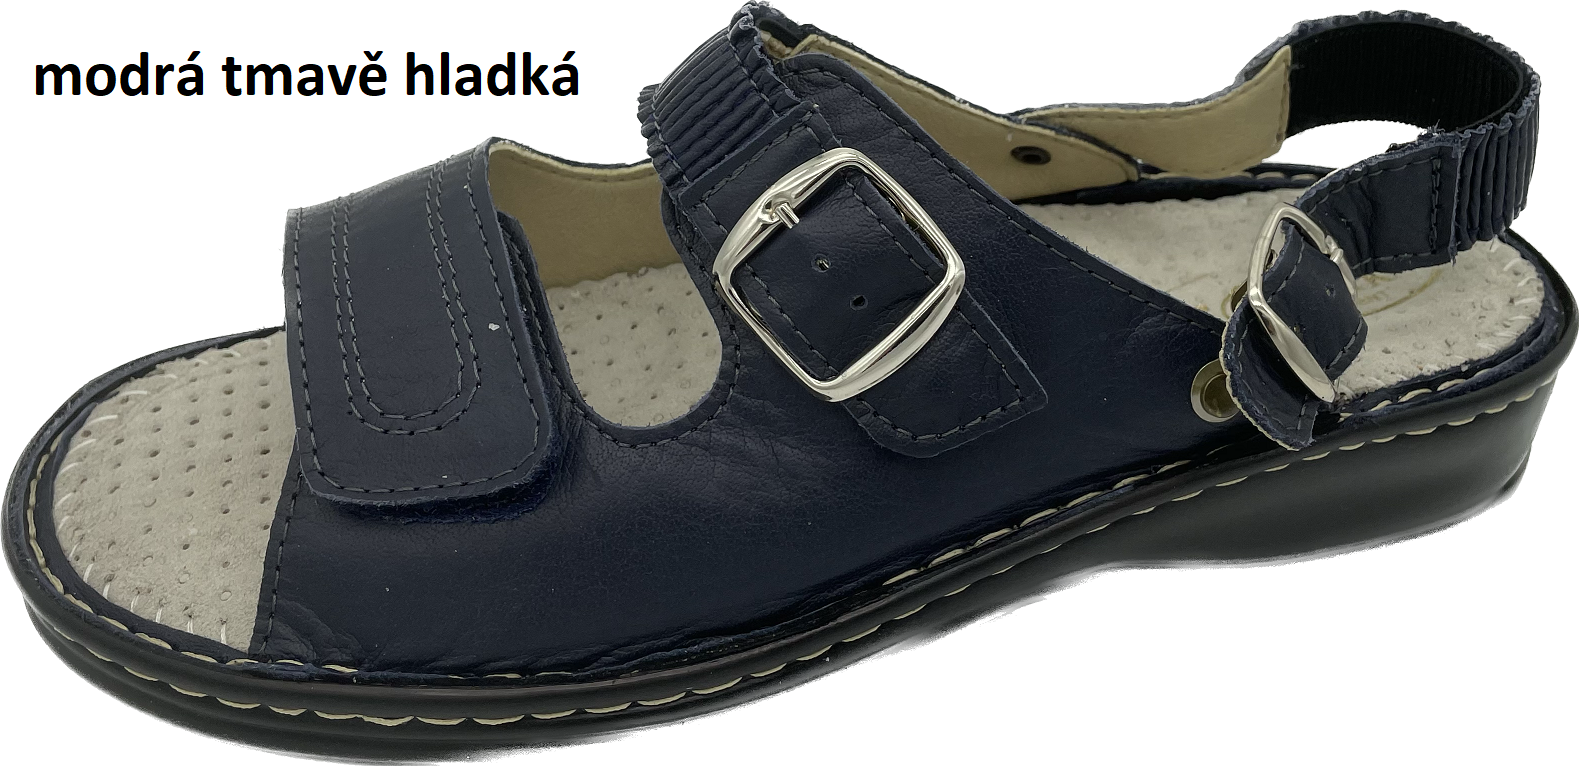 Boty Hanák vzor 305 P - černá podešev Barva usně: modrá tmavě hladká, Velikosti obuvi: 42